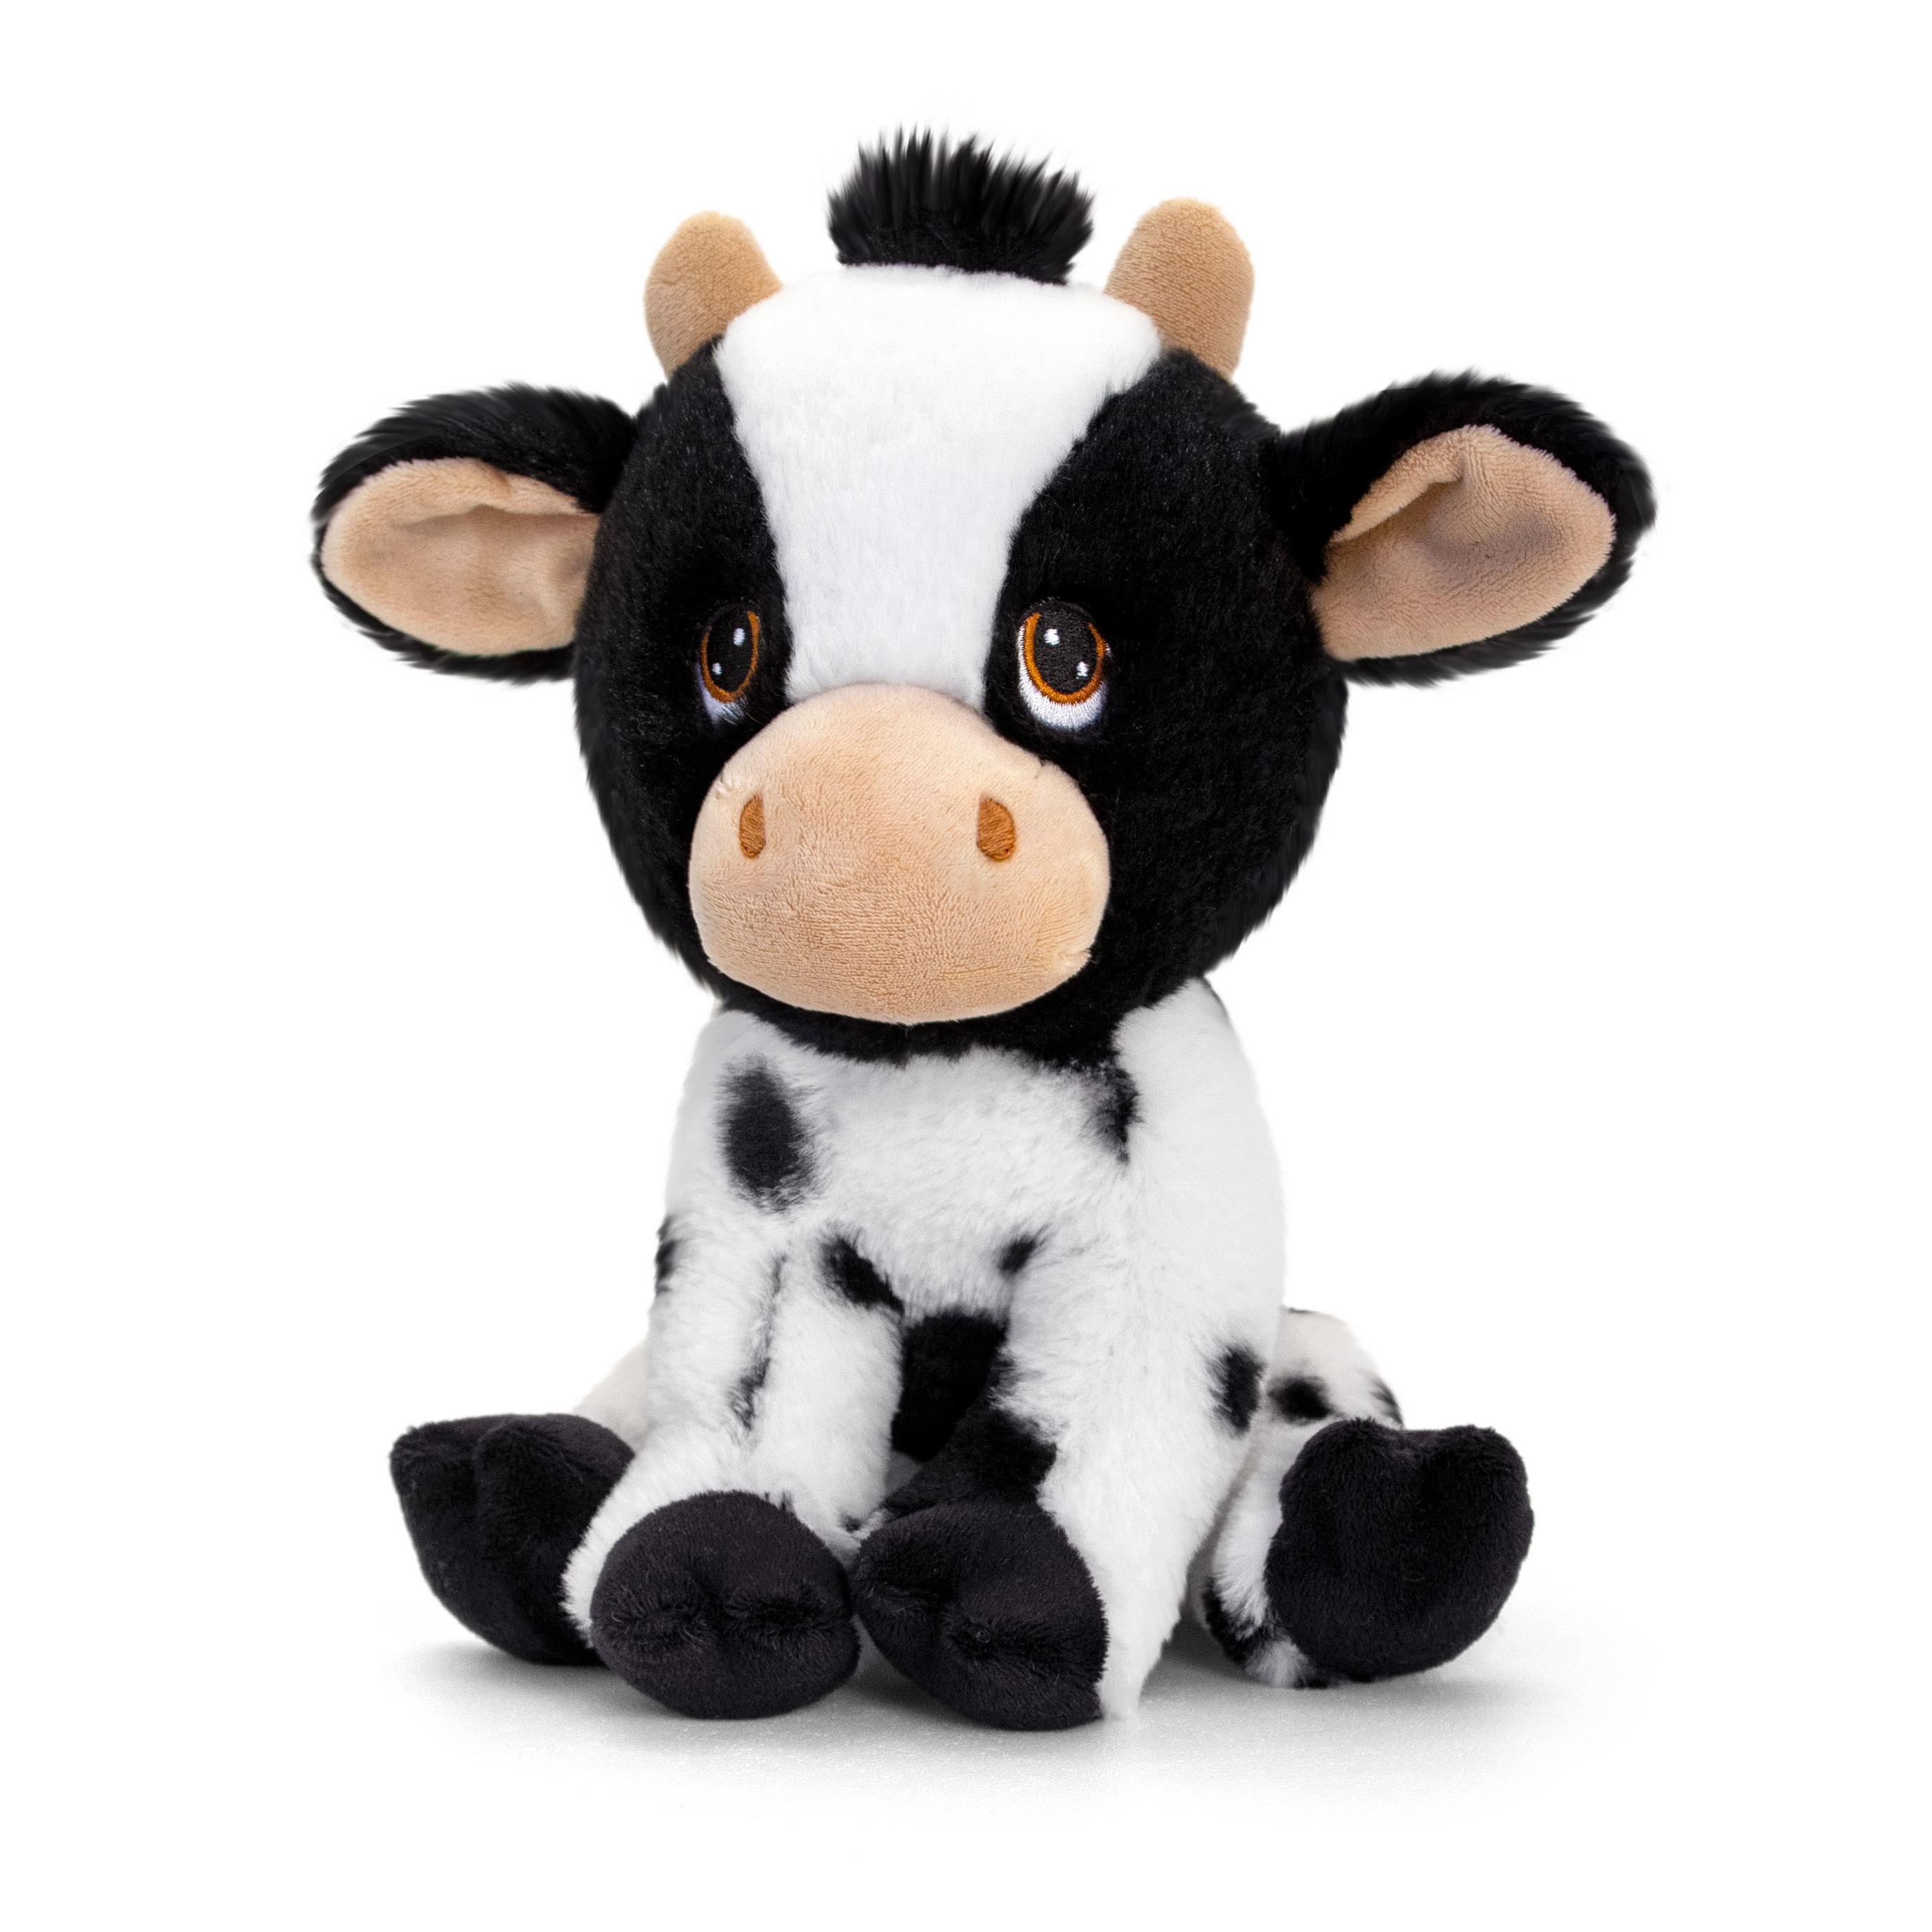 Pluche knuffel dier zwart-witte koe 25 cm